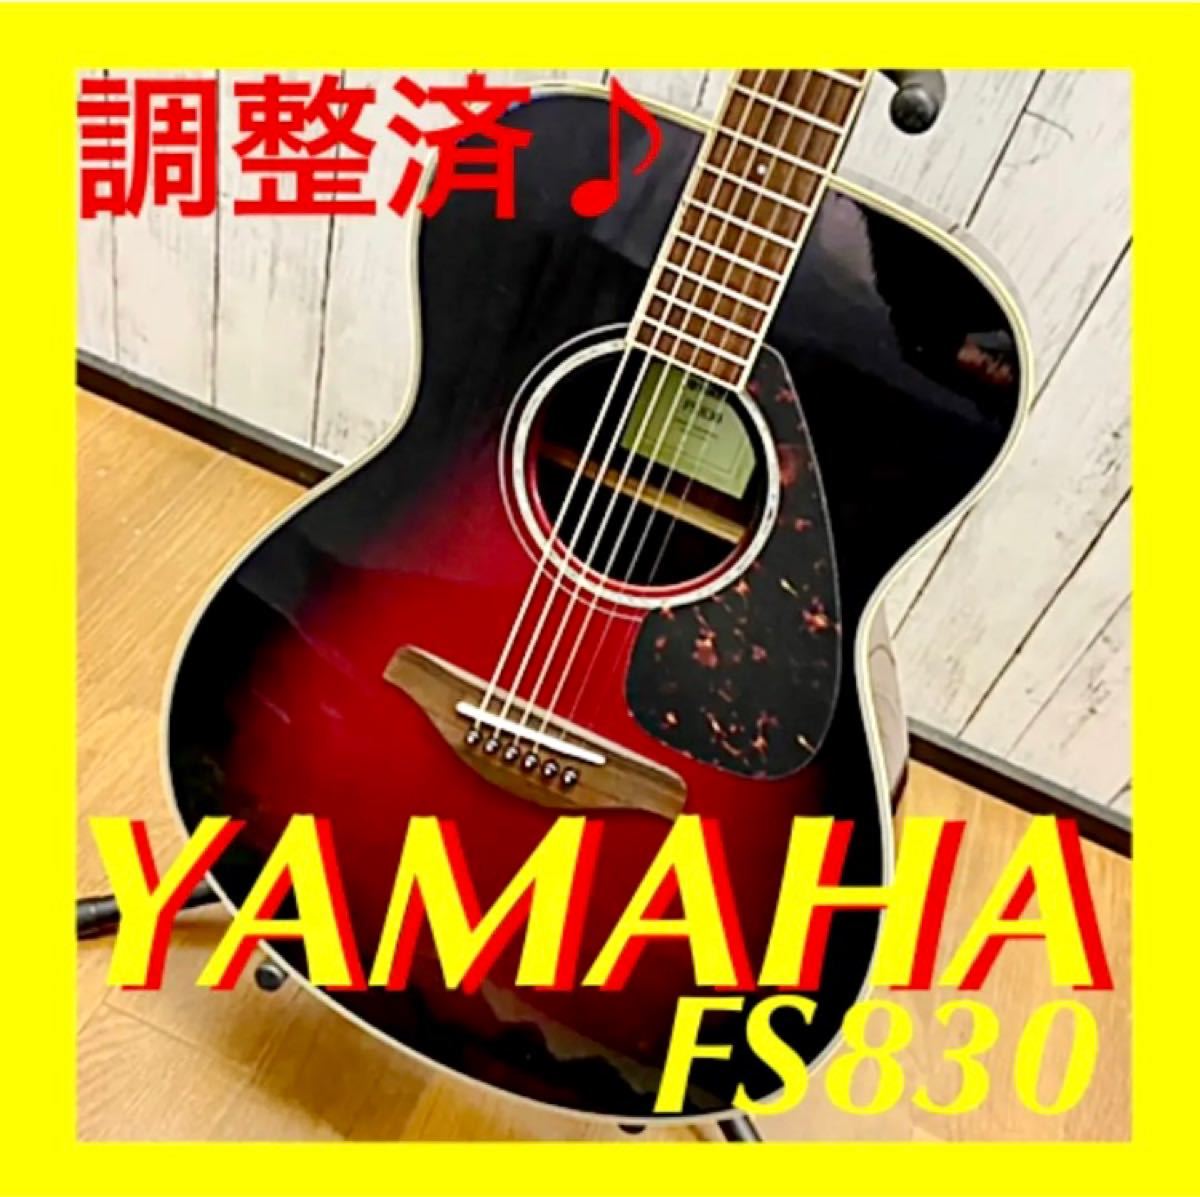 調整済♪ YAMAHA FS830 ヤマハ アコースティックギター 楽器、器材